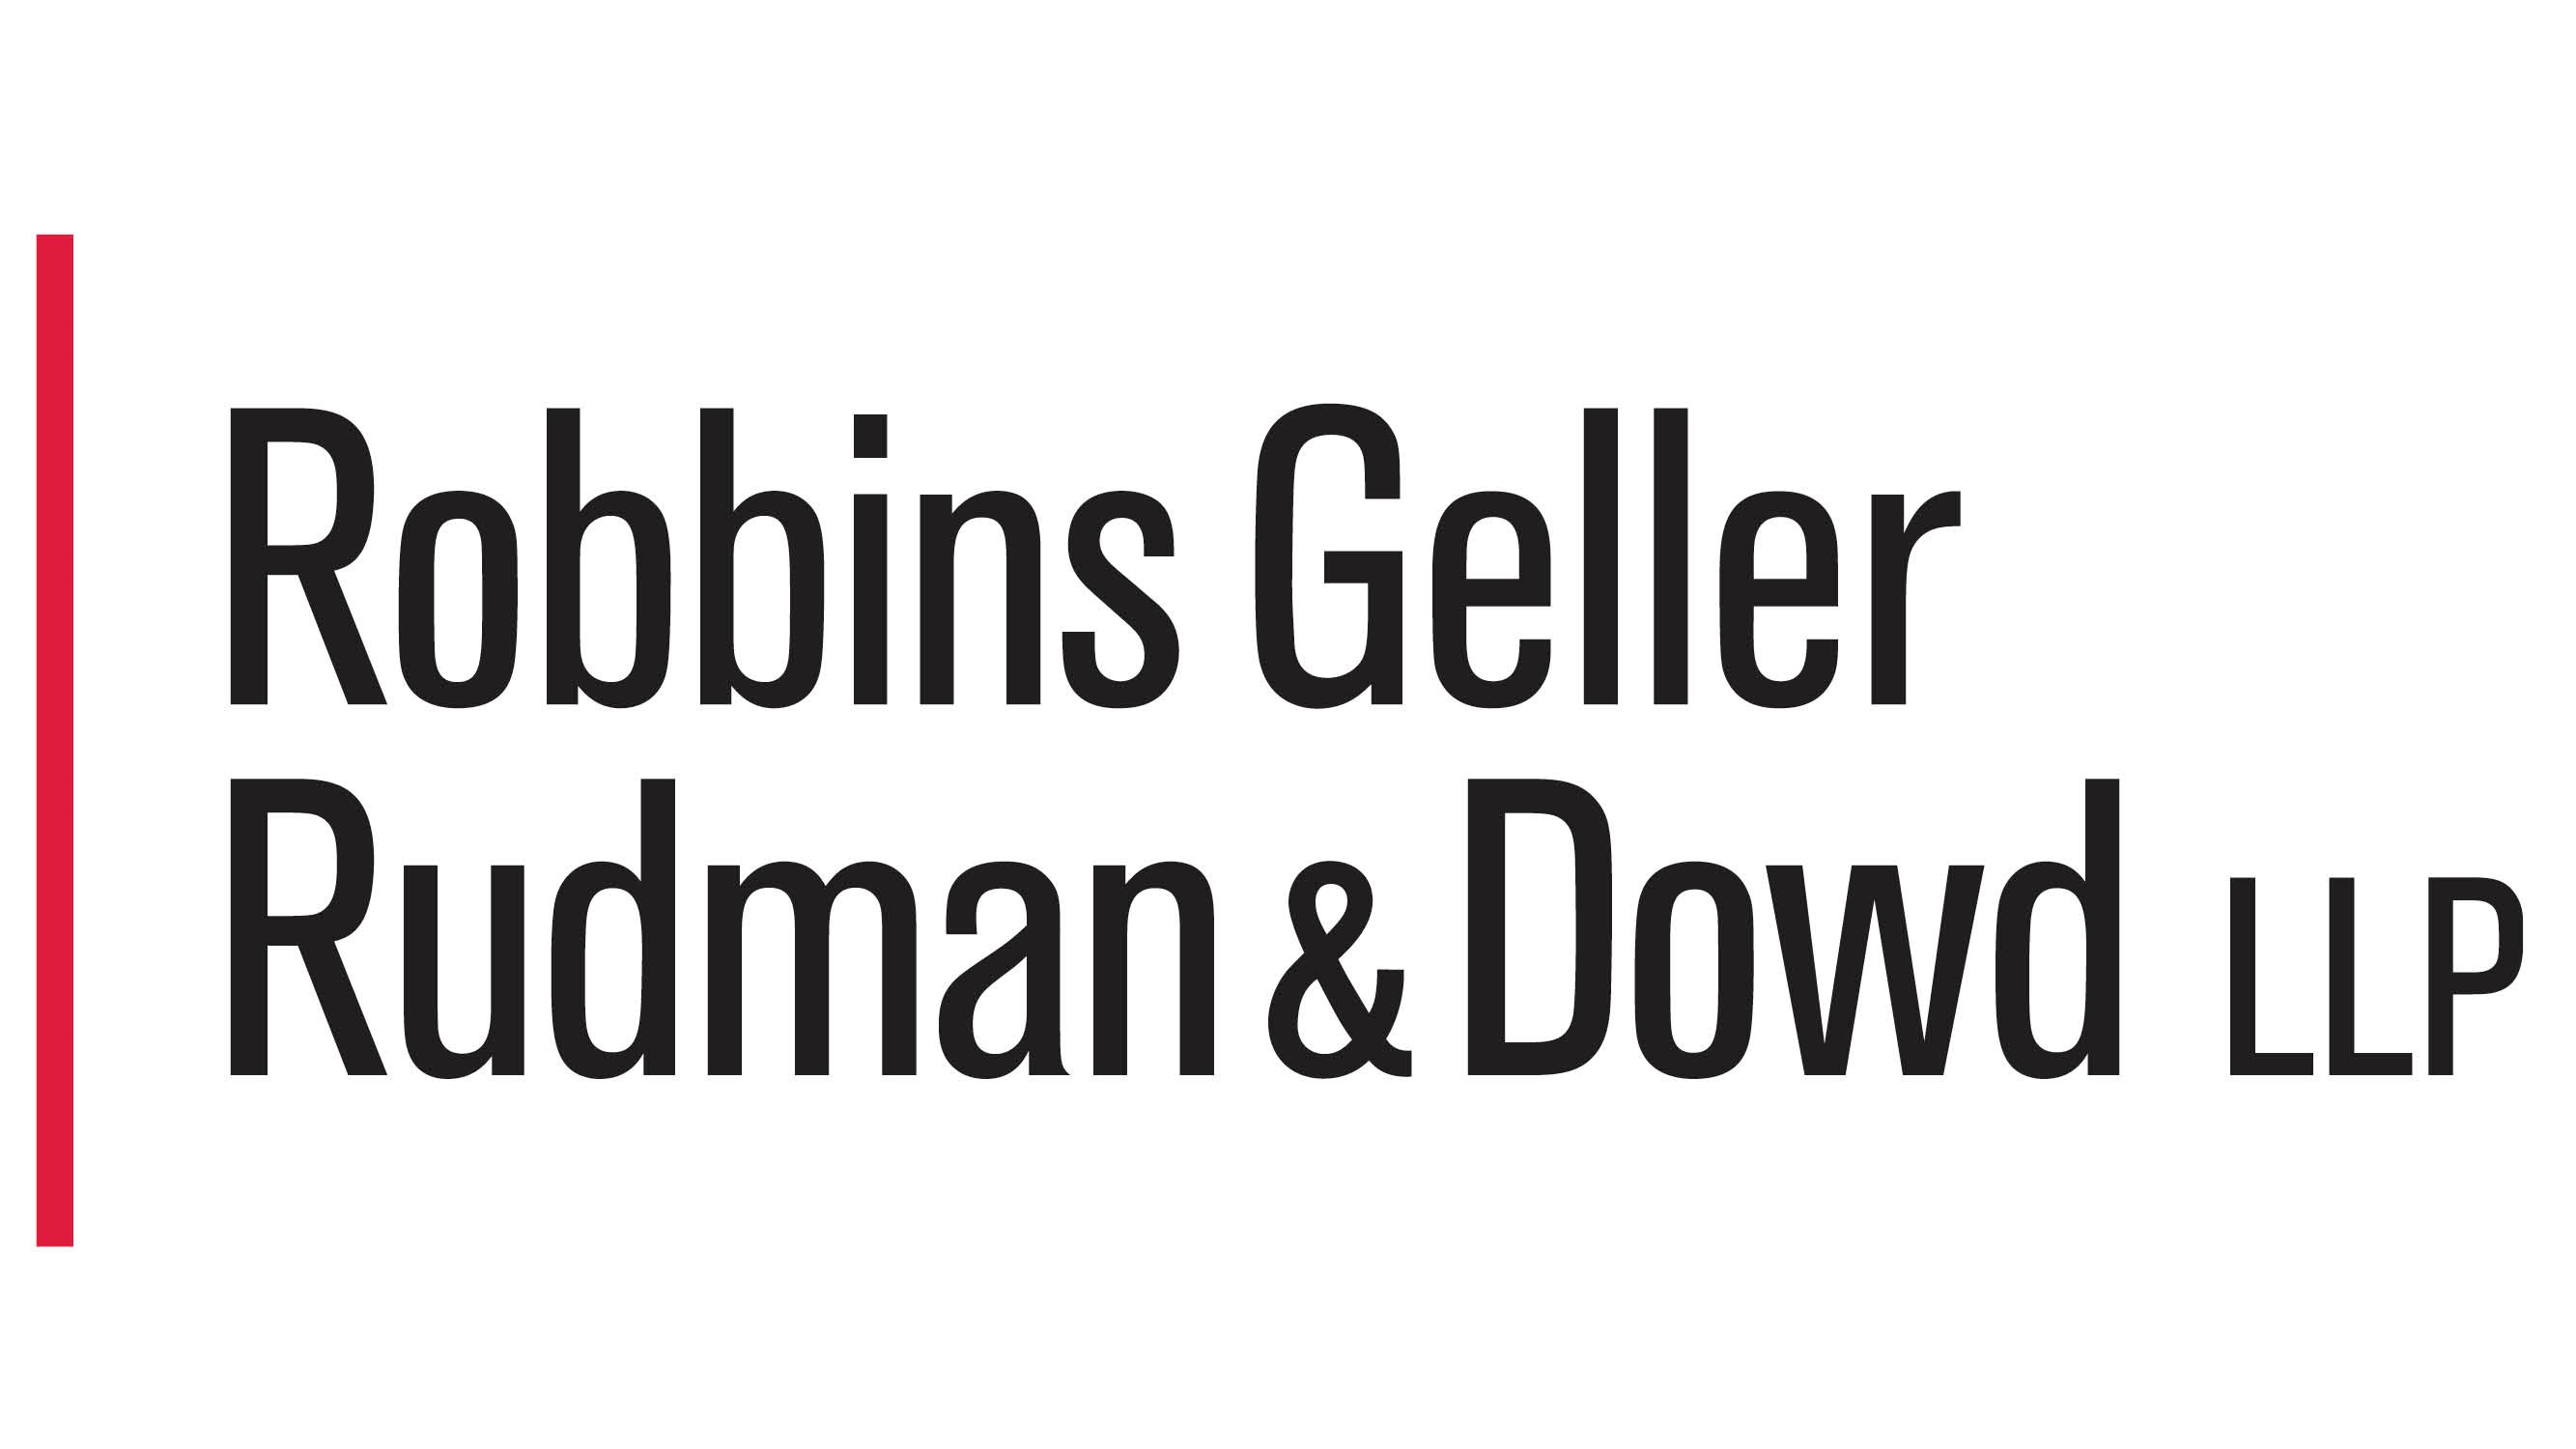 Robbins Geller Rudman & Dowd LLP, Sunday, December 5, 2021, Press release picture